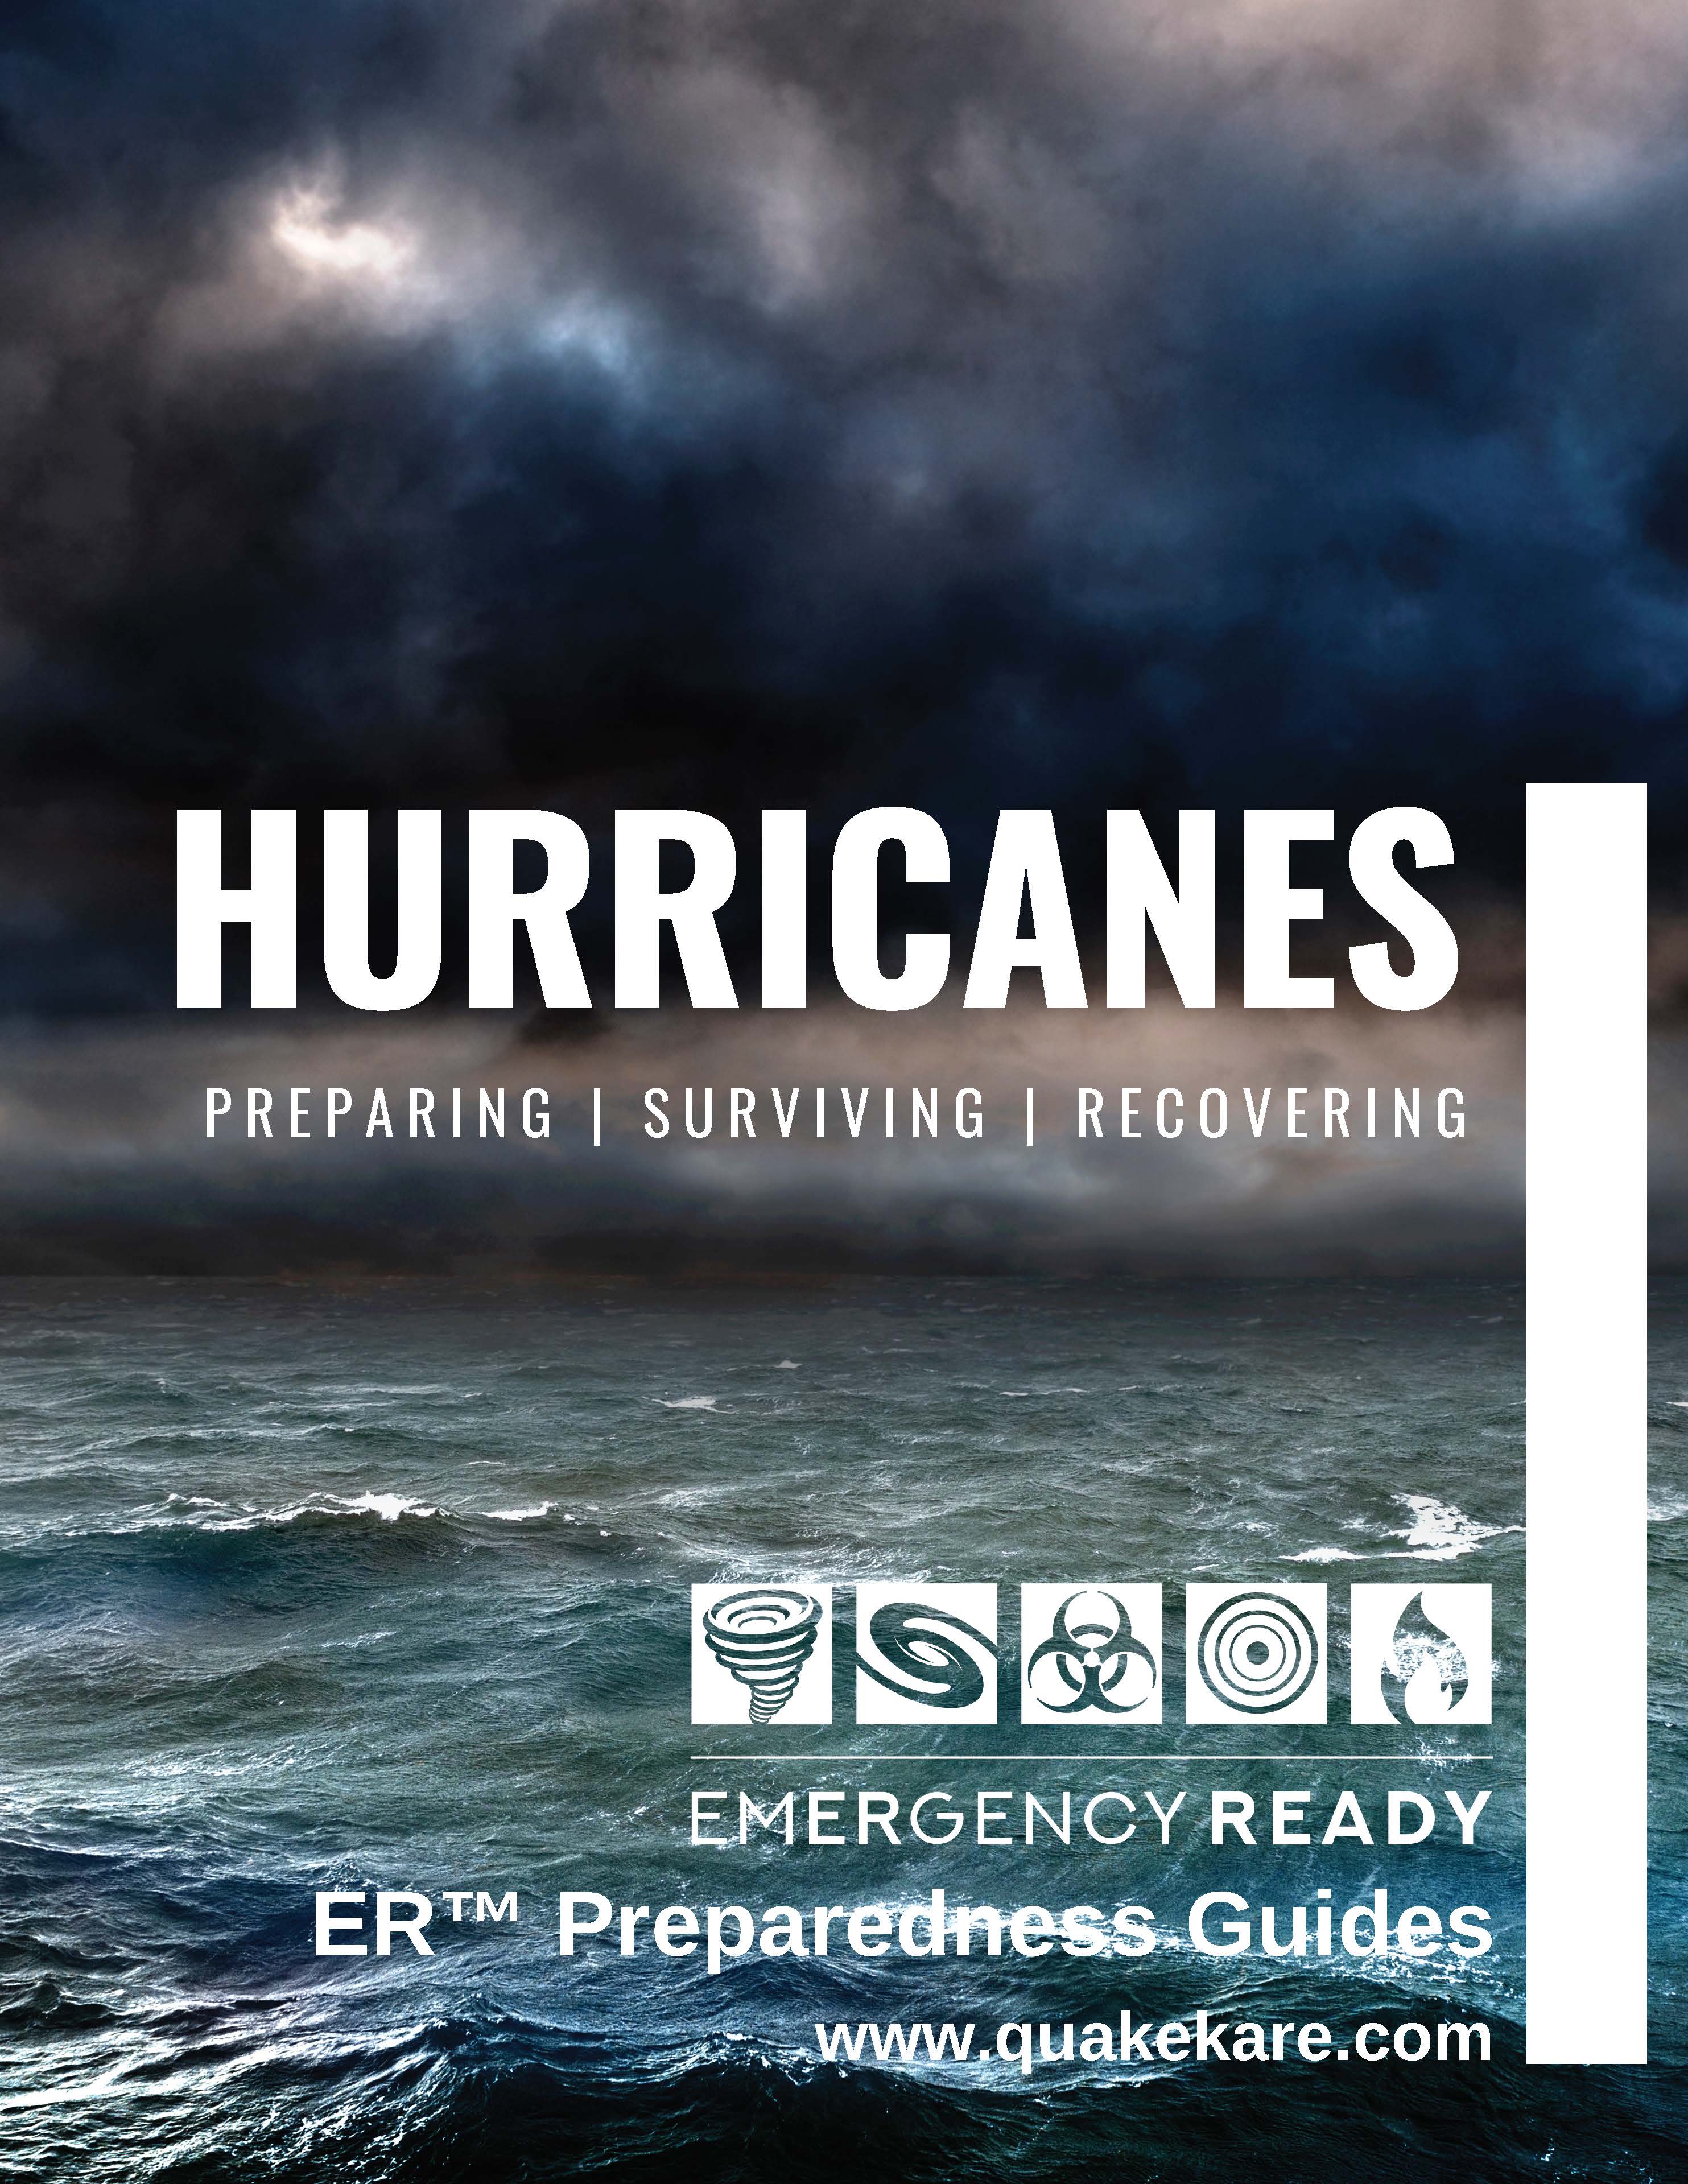 Hurricane Preparedness Guide - Free Download